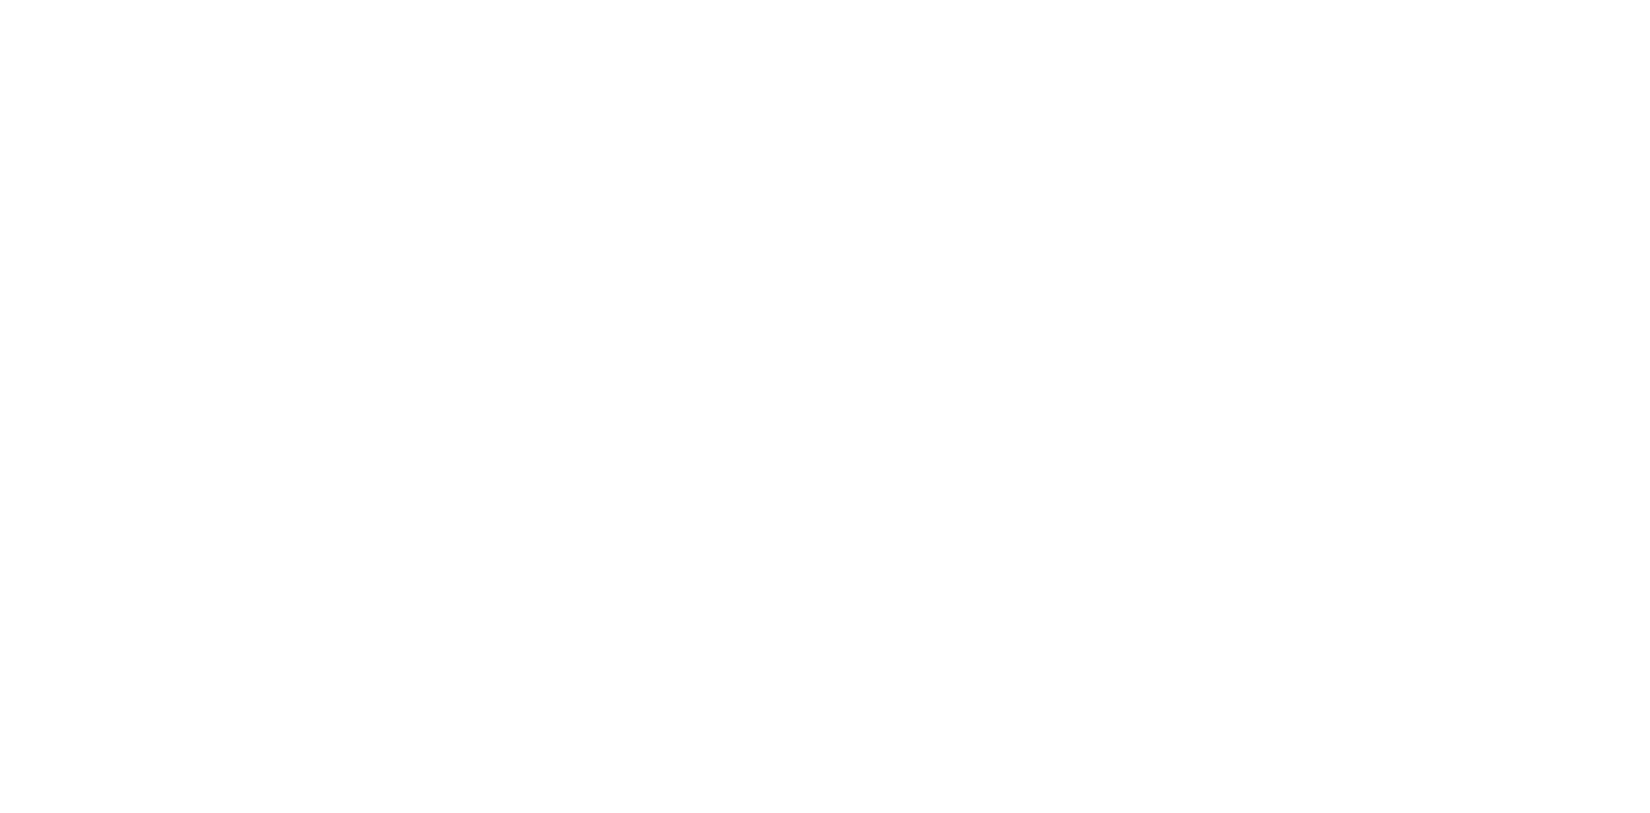 brennan2-01